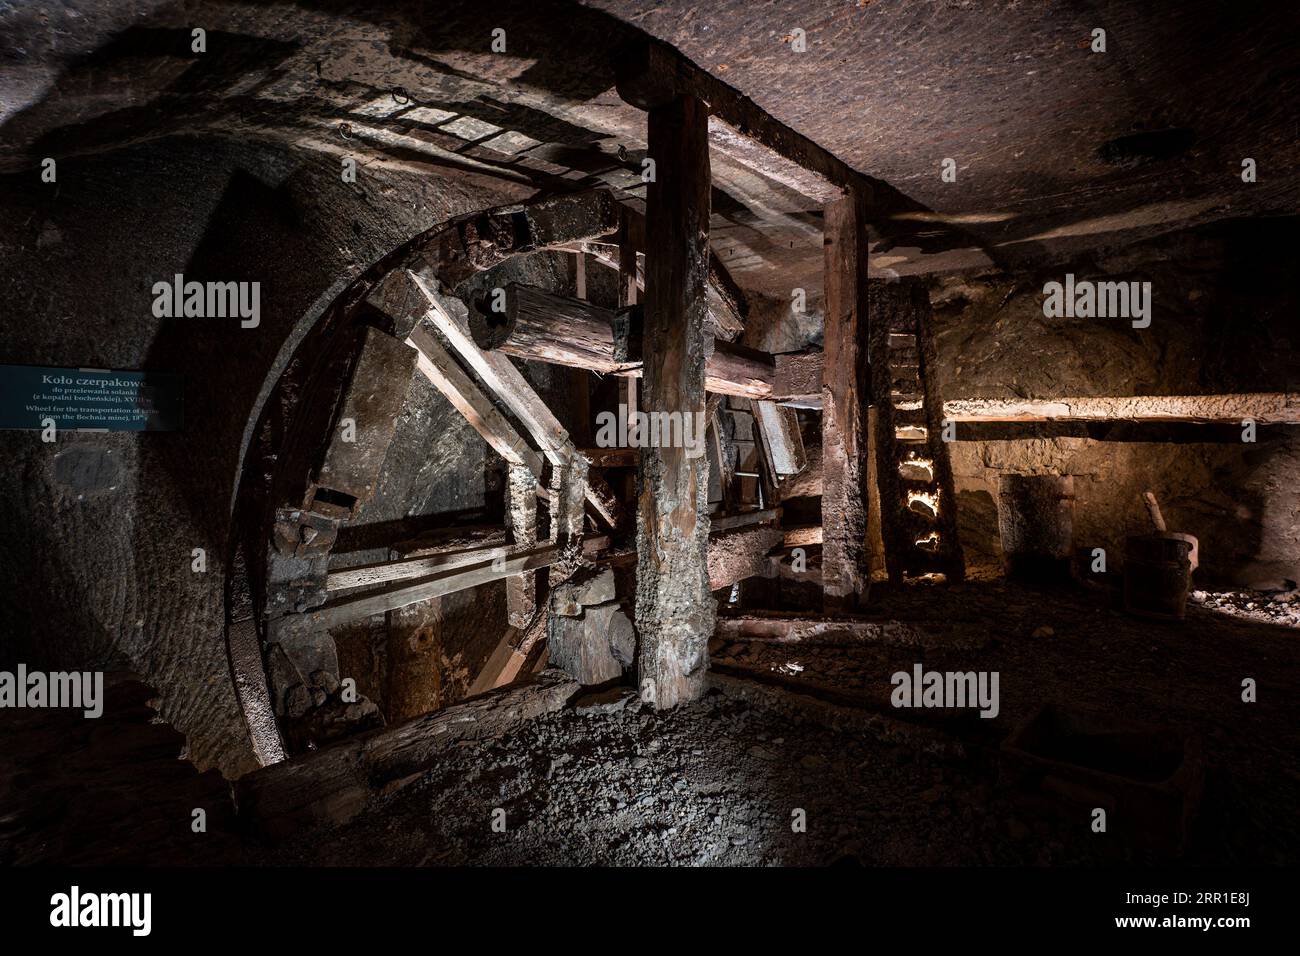 WIELICZKA, POLAND - MAY 24, 2023: Underground Wieliczka Salt Mine (13th century), one of the world's oldest salt mines, near Krakow, Poland. Stock Photo